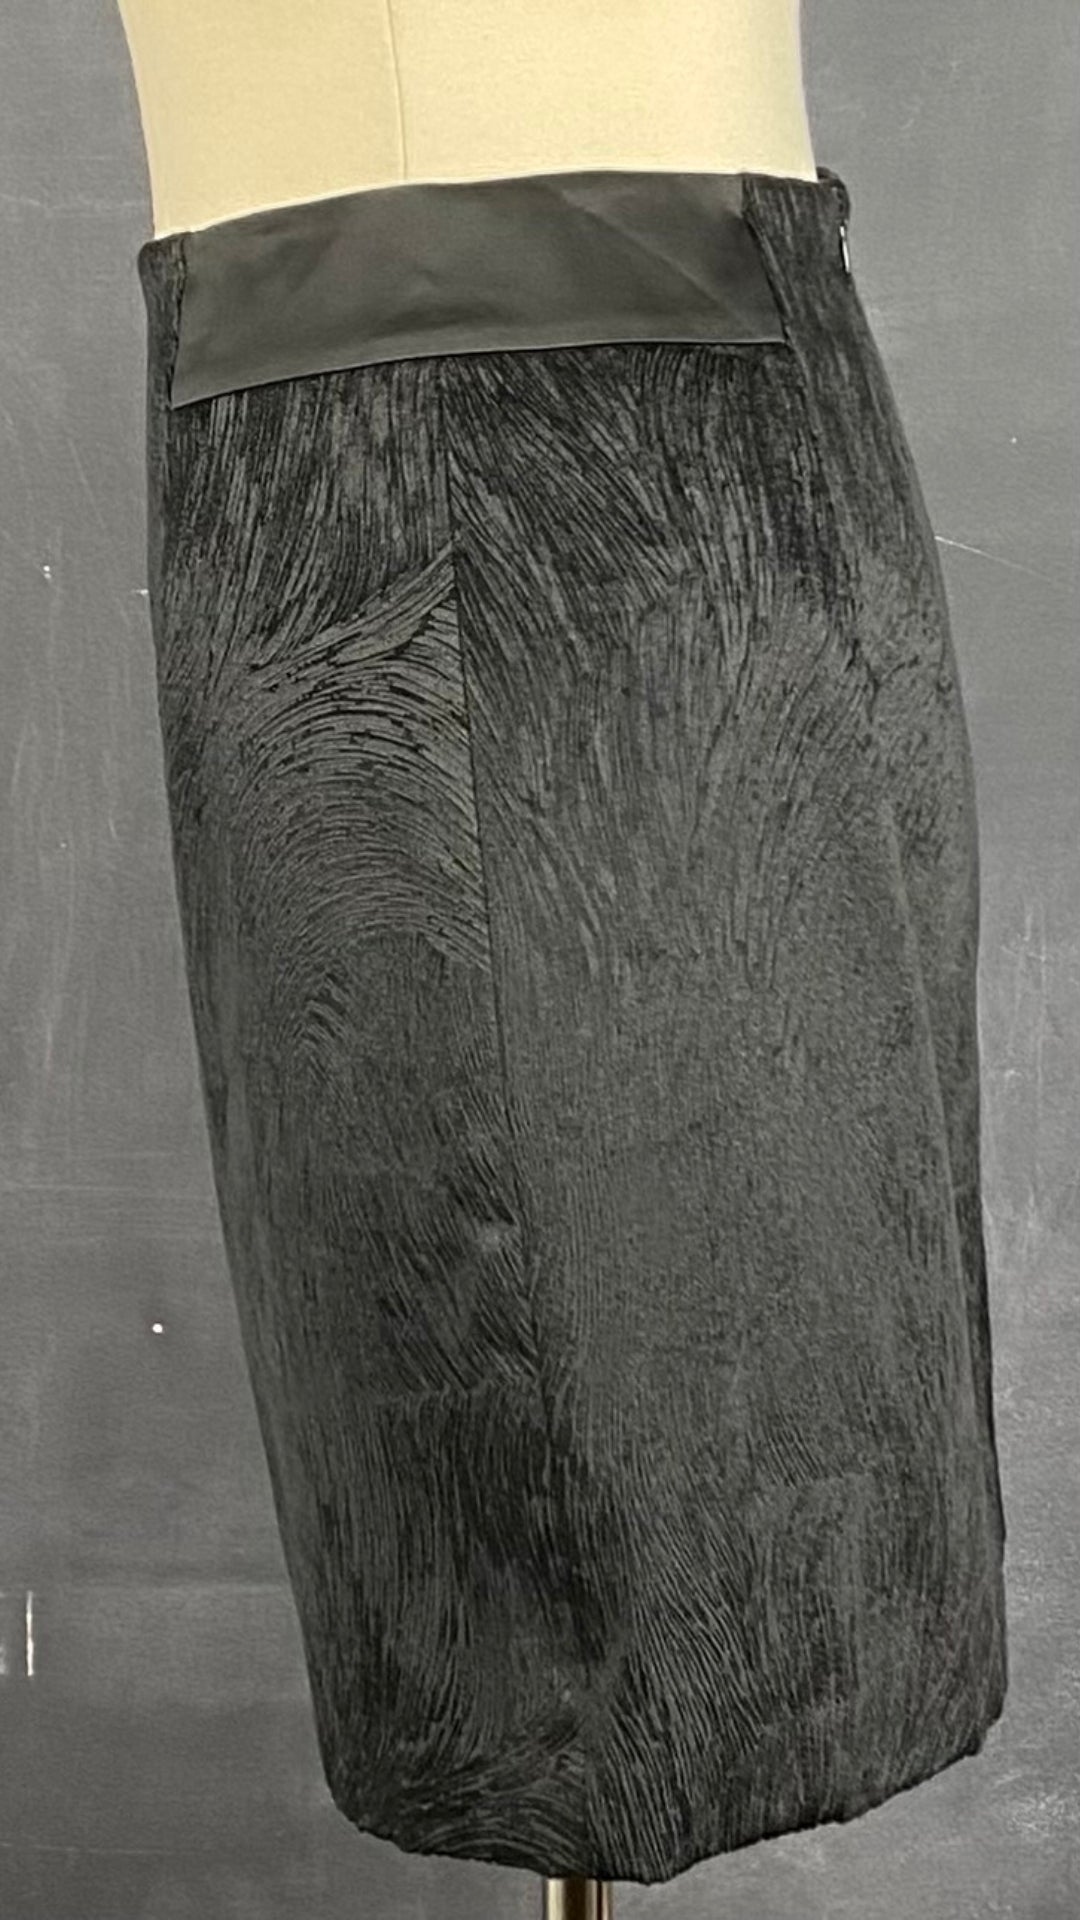 Jupe noire chic texturée Tristan, taille 6. Vue de côté.